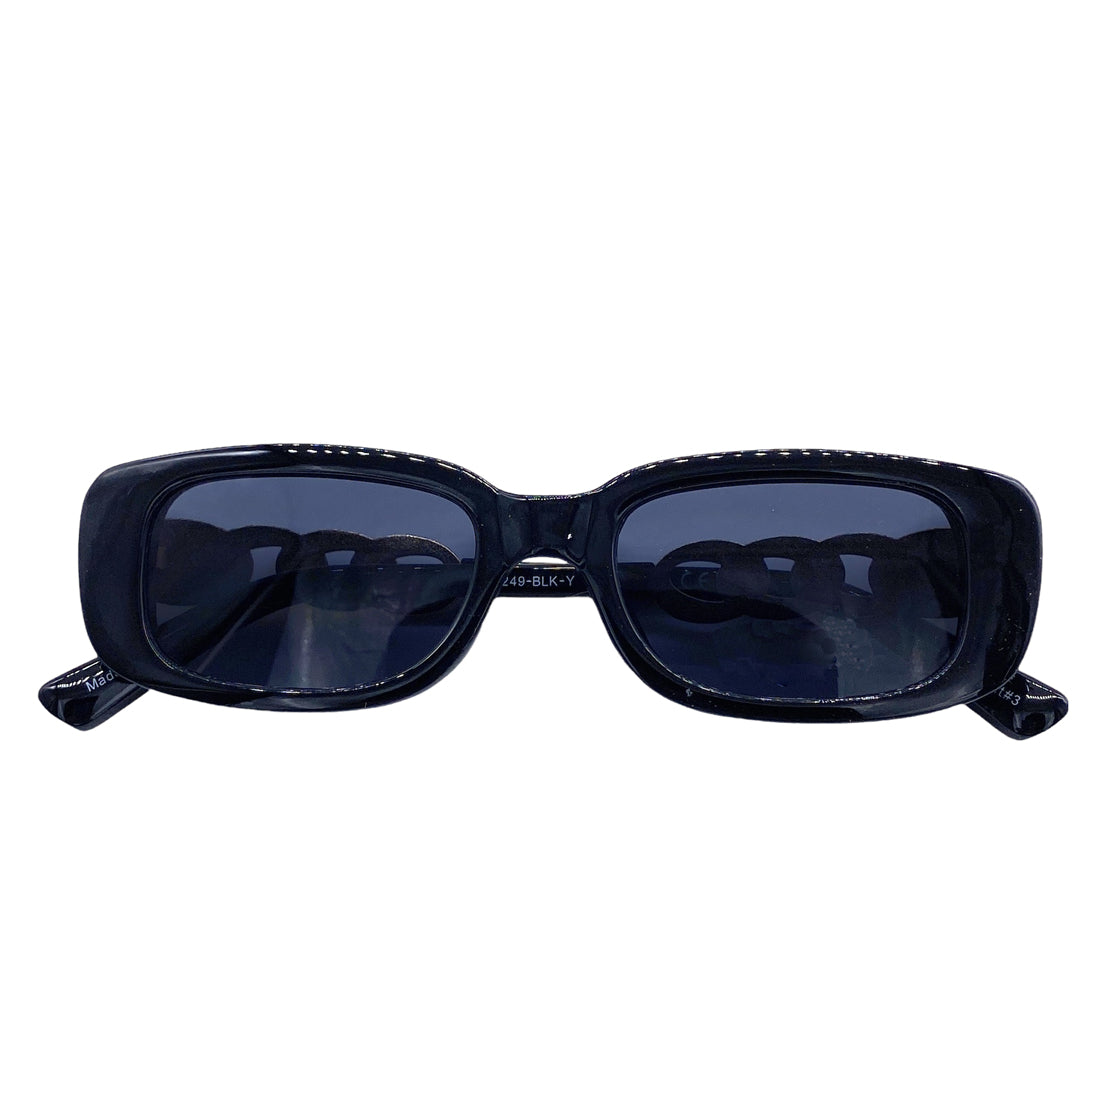 Buy GIFIORE Rectangle Sunglasses Women Pink Trendy Retro Sunglasses, Black,  at Amazon.in